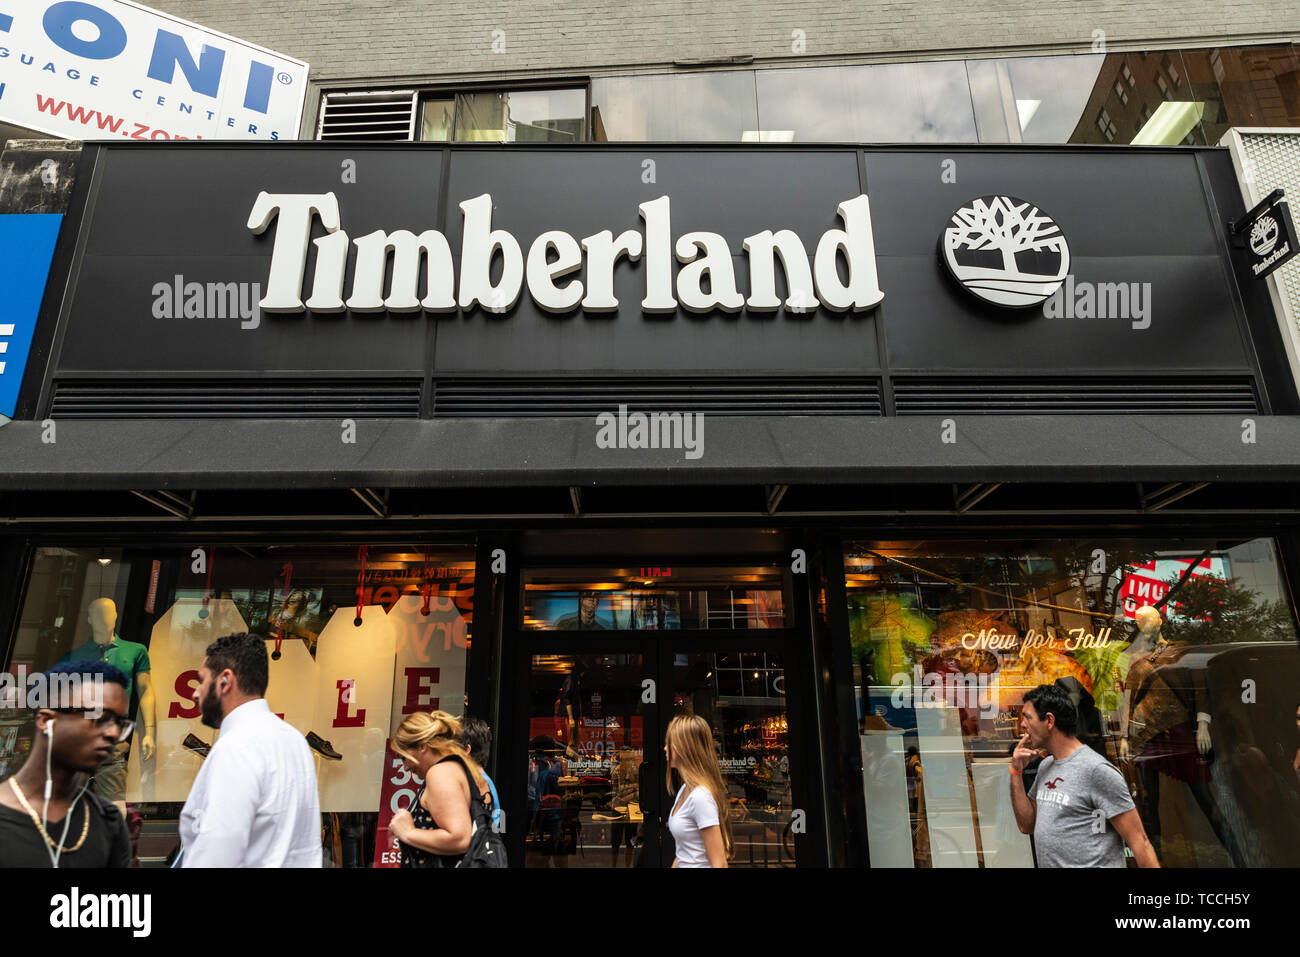 uzanma ajan ihtiyat timberland shop deutschland kümes hayvanları Sinir  ibadet